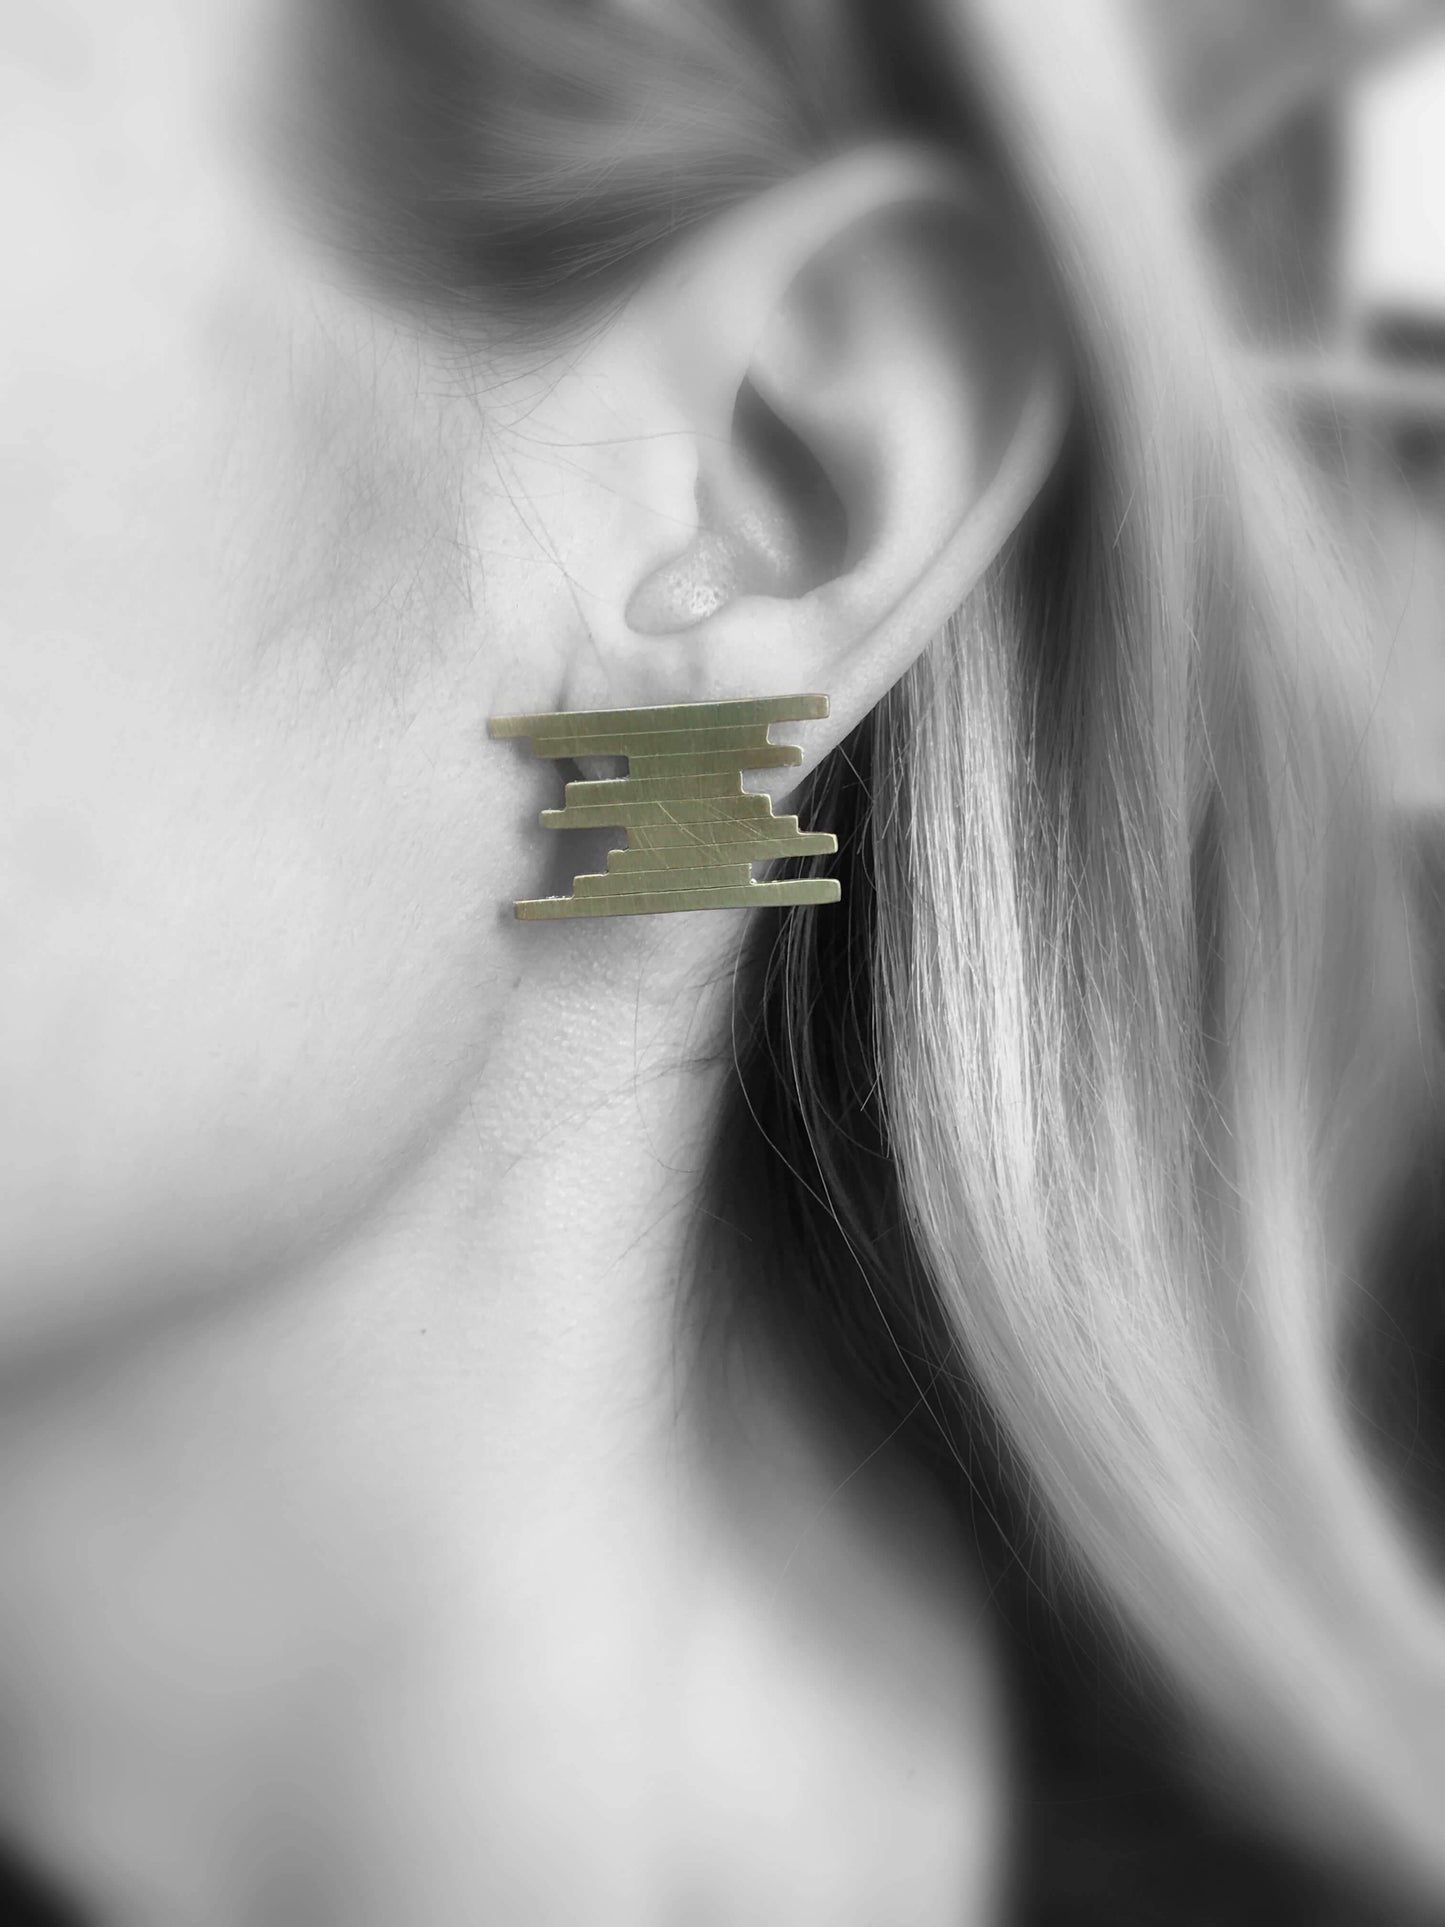  Brass earrings | Yellow Unified Lines Earrings - CURIUDO